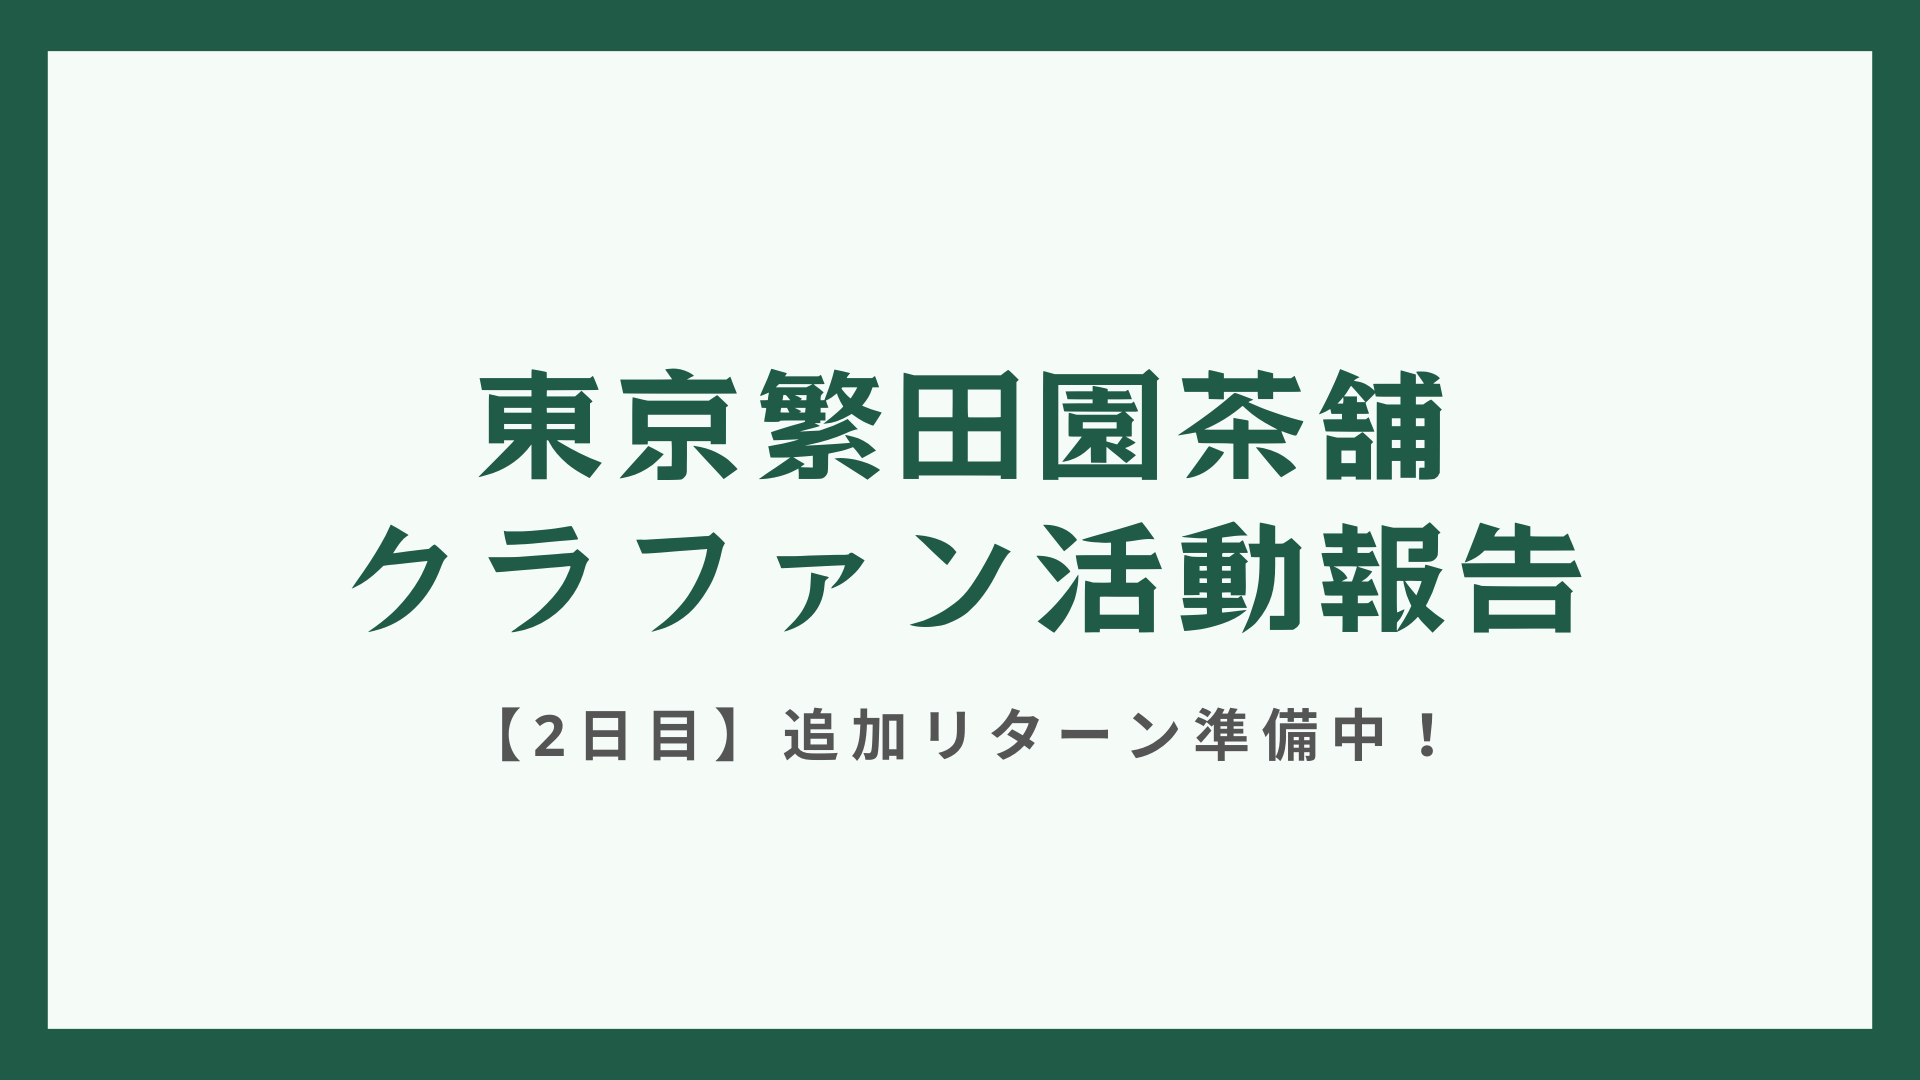 【クラファン活動報告・2日目】！「霧島ヌーヴォー」完売！追加リターン準備中！